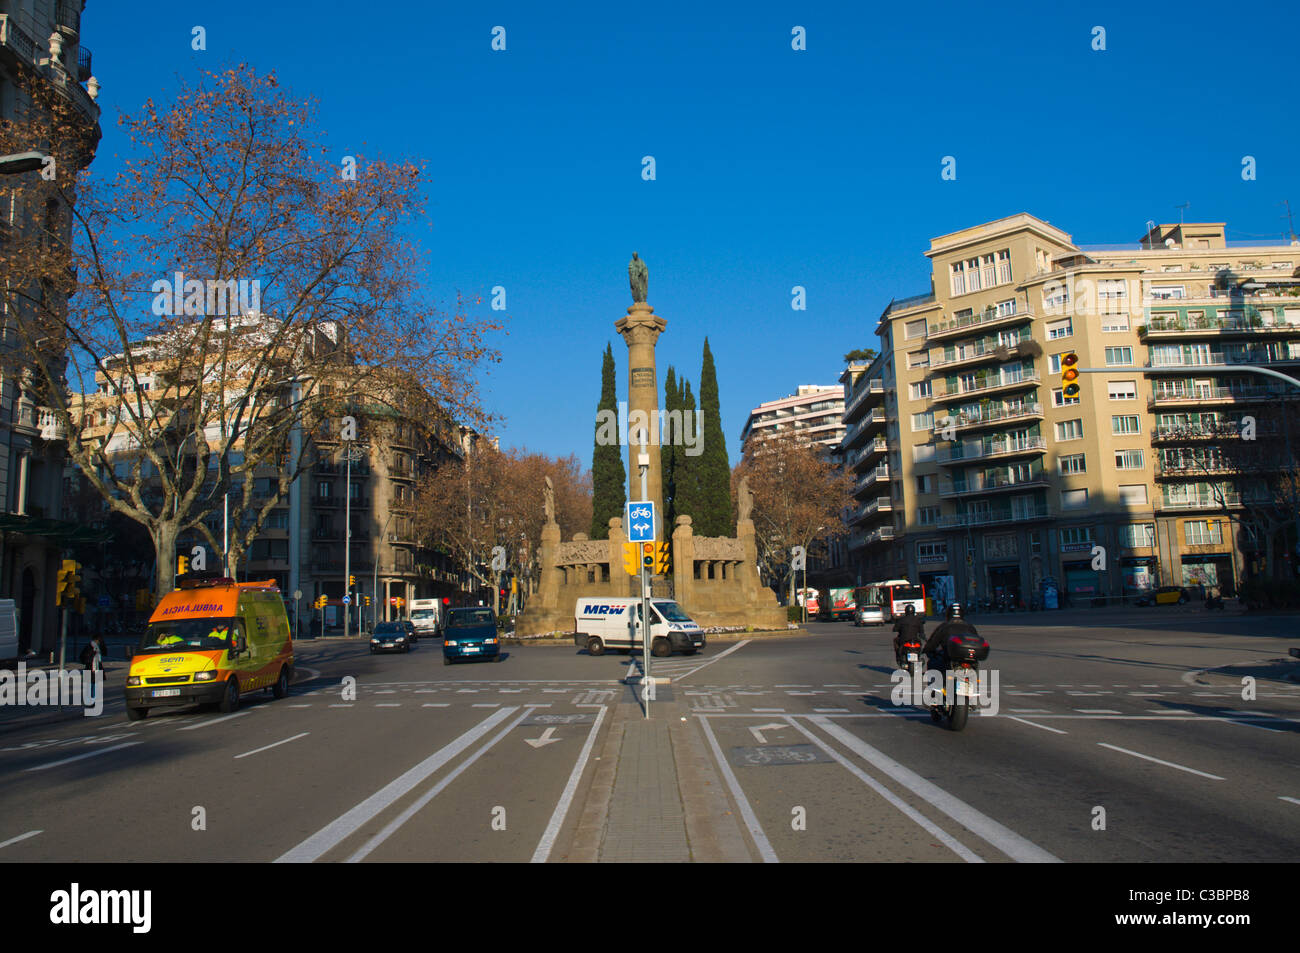 Placa Mossen Jacint Verdaguer square à la jonction avec l'Avenue Diagonal et le Passeig de Sant Joan Eixample Barcelone Espagne Banque D'Images